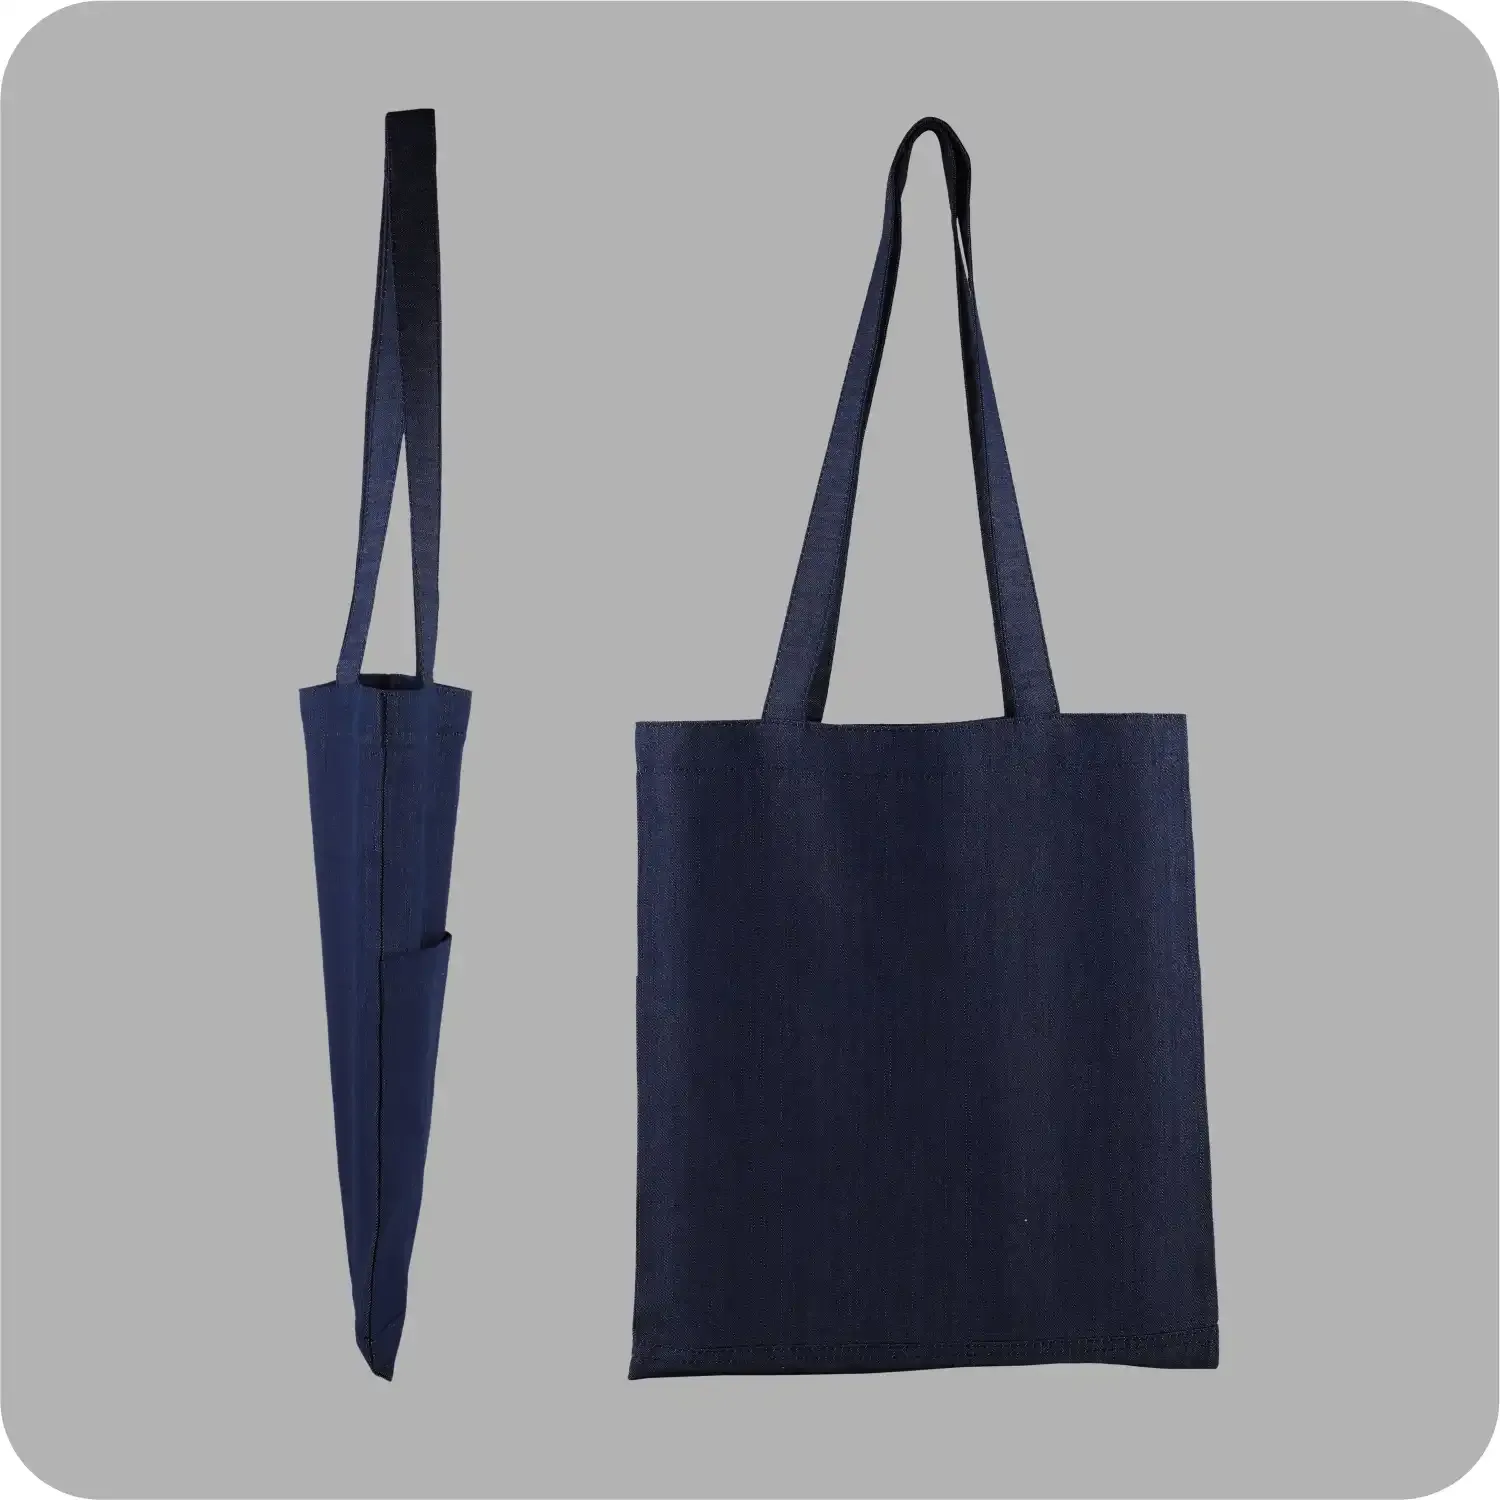 Denim Tote Bag Shopping Bag Promotional Bag Conference Bag Institutional bag-06